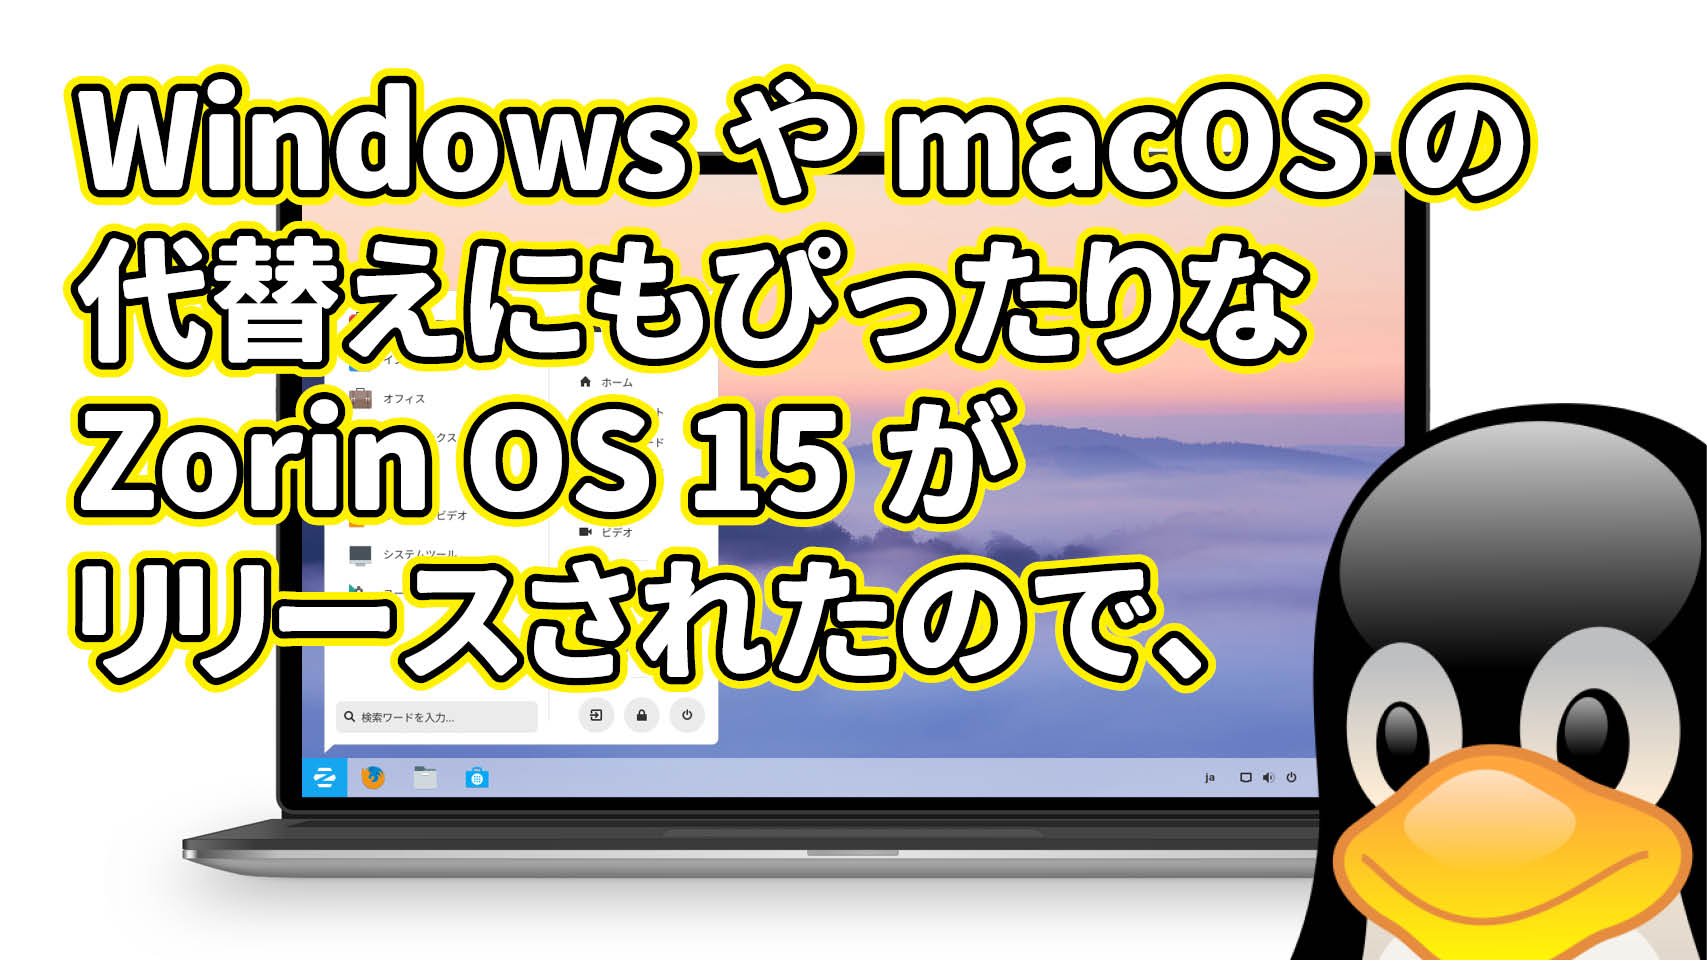 Windows や macOS の代替えにもぴったりな Zorin OS 15 がリリースされたので、